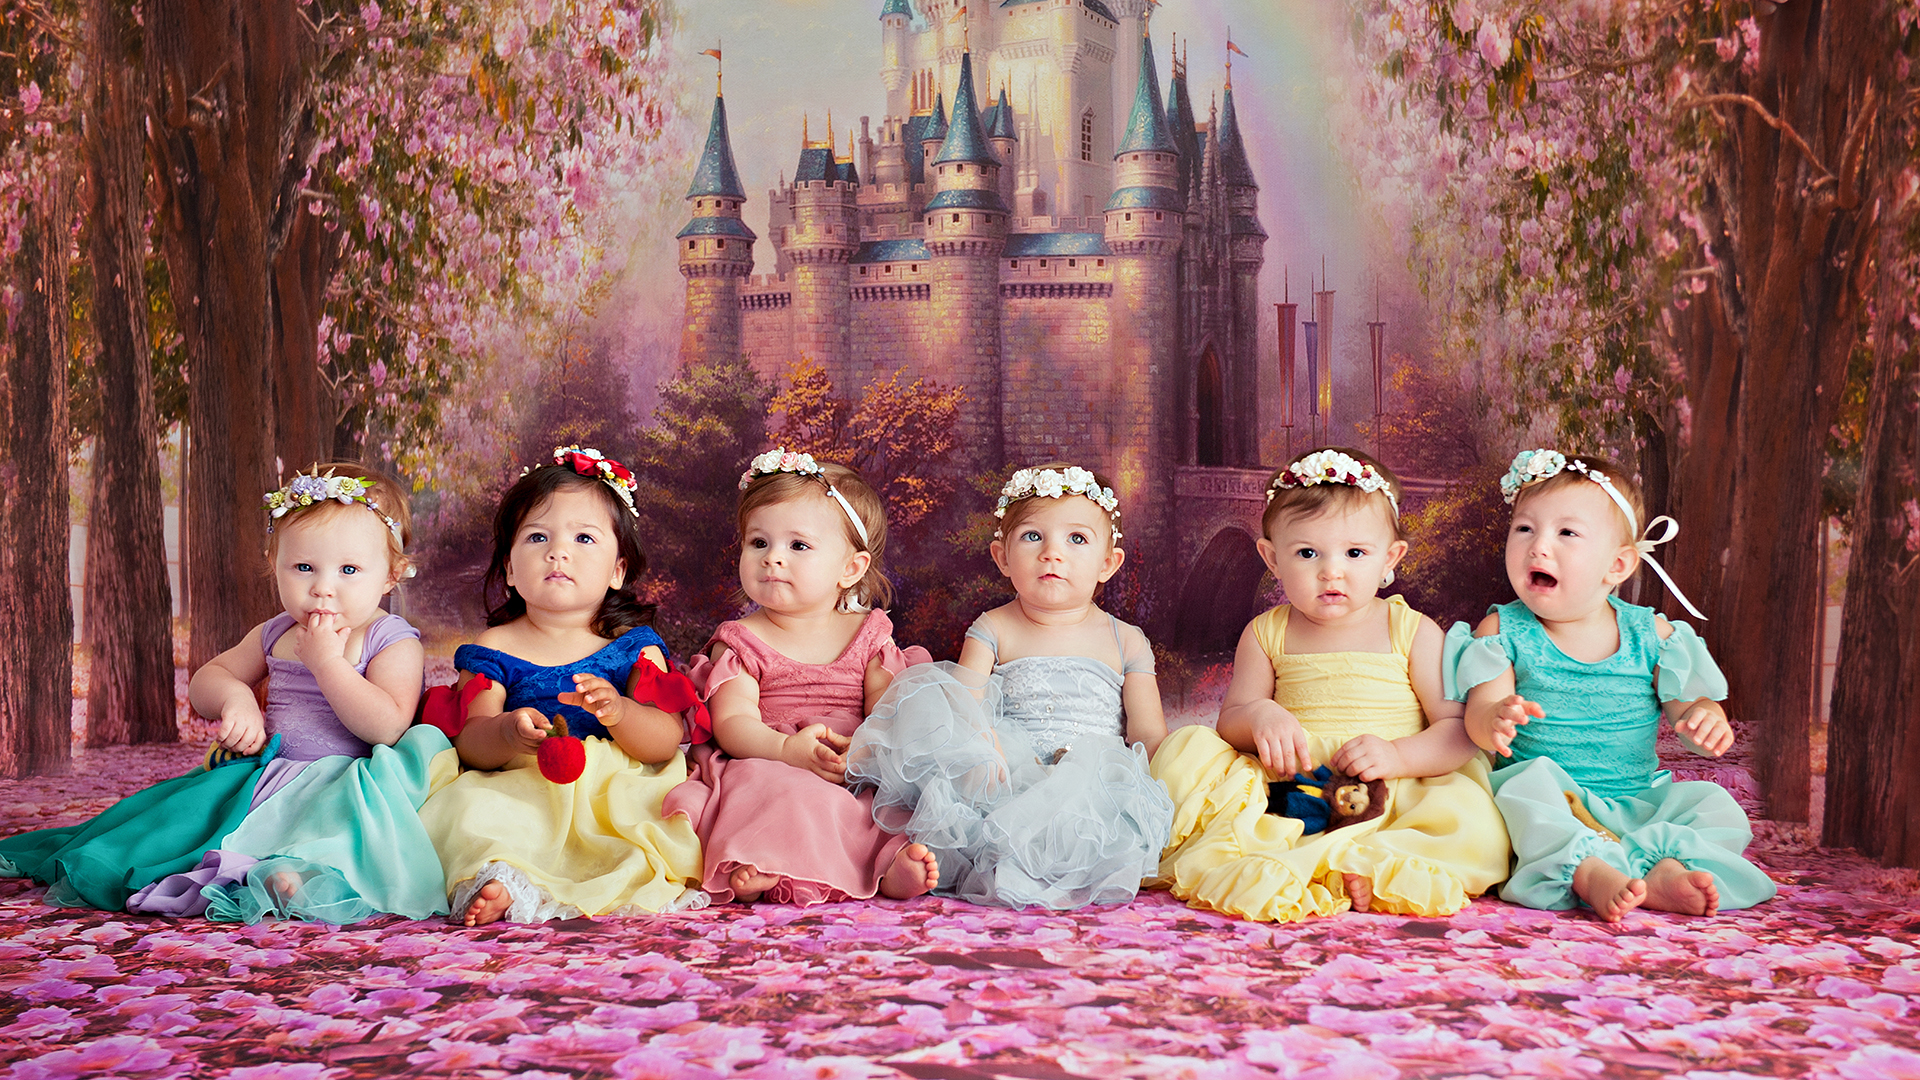 baby disney princesses wallpaper